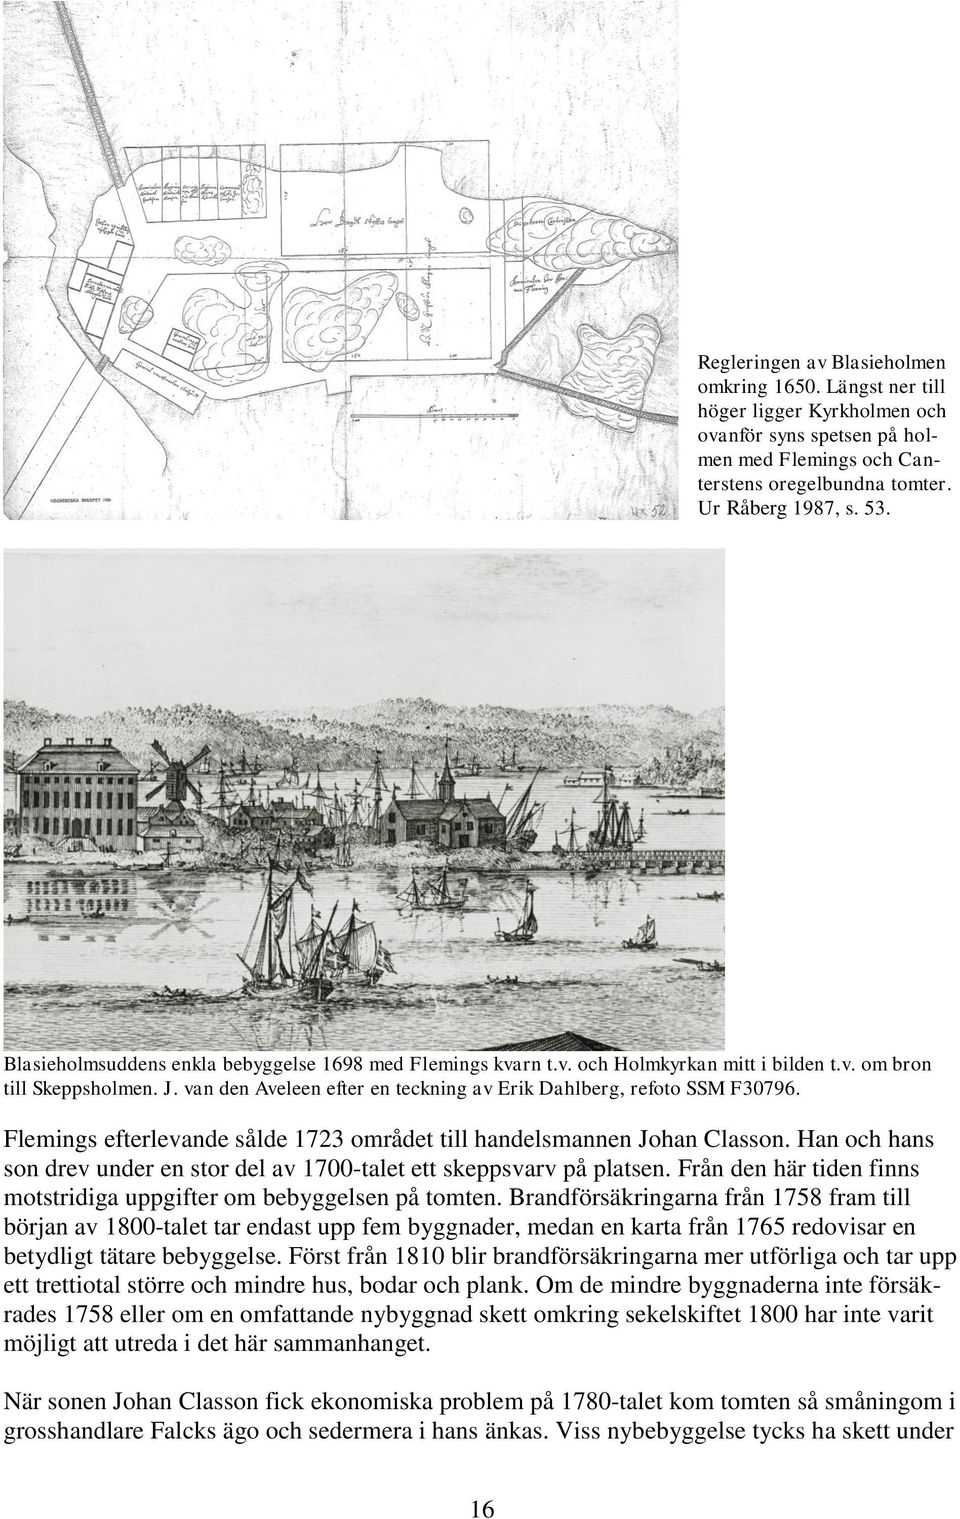 Flemings efterlevande sålde 1723 området till handelsmannen Johan Classon. Han och hans son drev under en stor del av 1700-talet ett skeppsvarv på platsen.